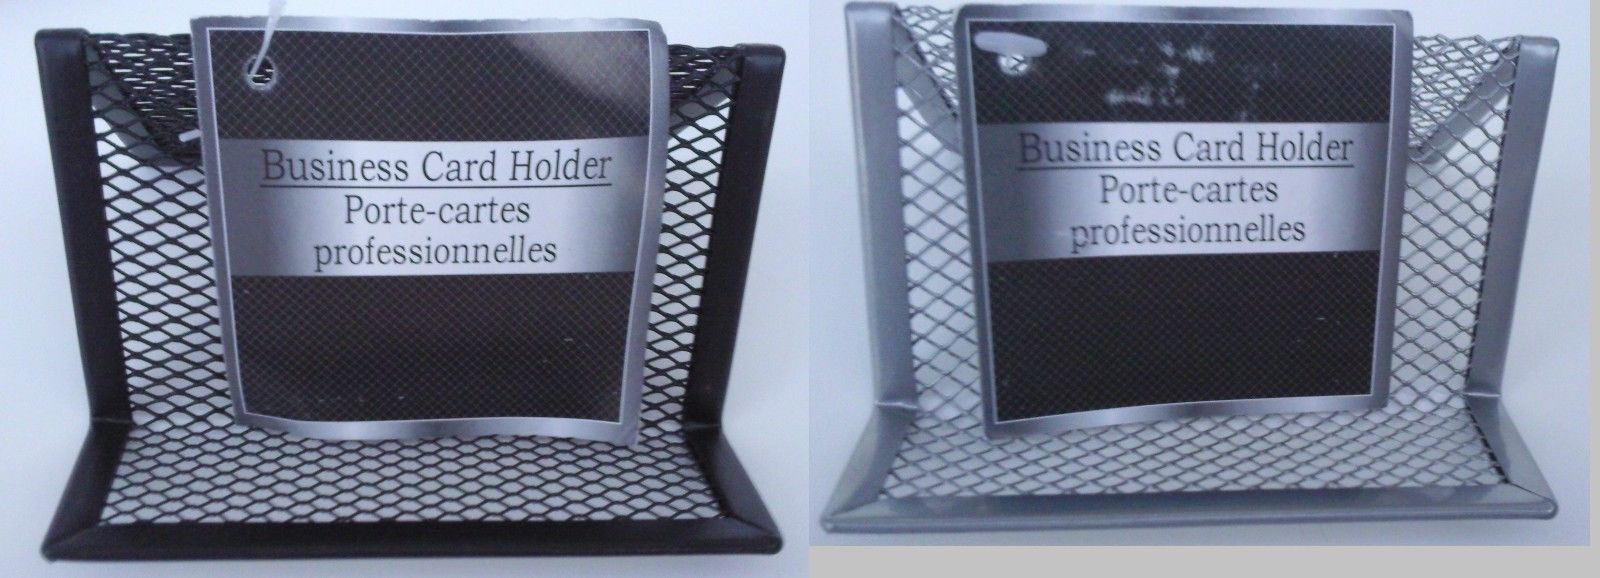 BUSINESS CARD HOLDER DESKTOP Steel Mesh Desk Organizer, SELECT Black or Silver - $2.99